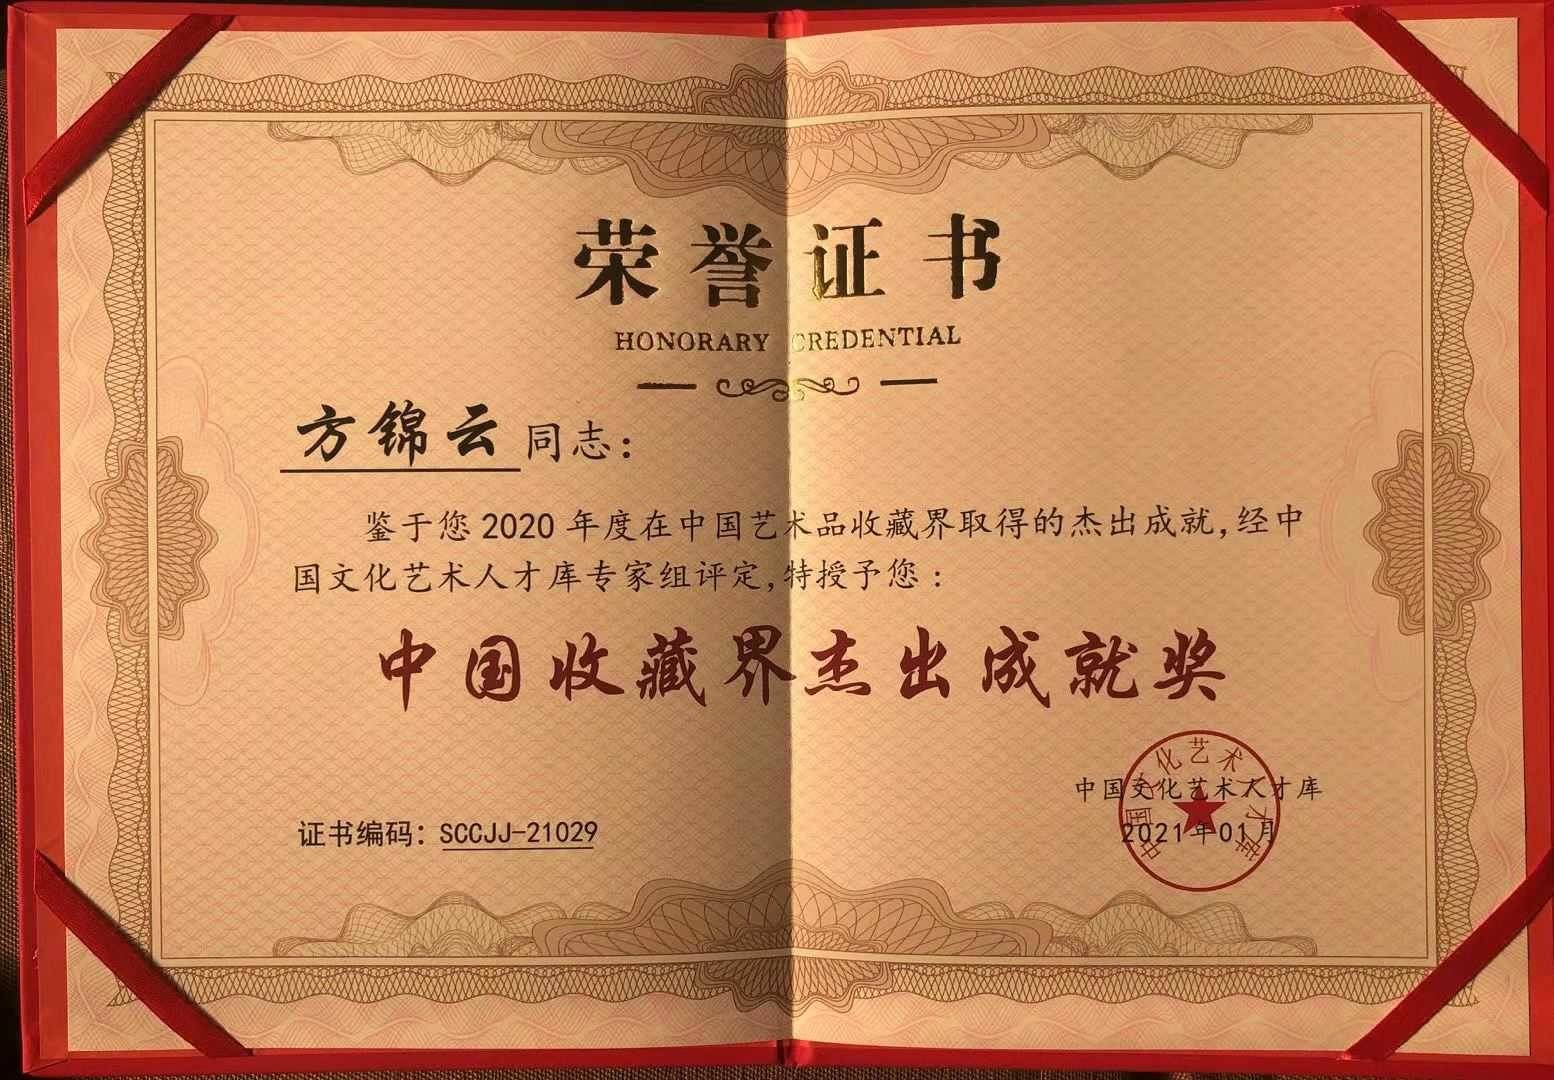 中国收藏家协会会员,国际注册艺术品-文物鉴定评估师(icahra),证书